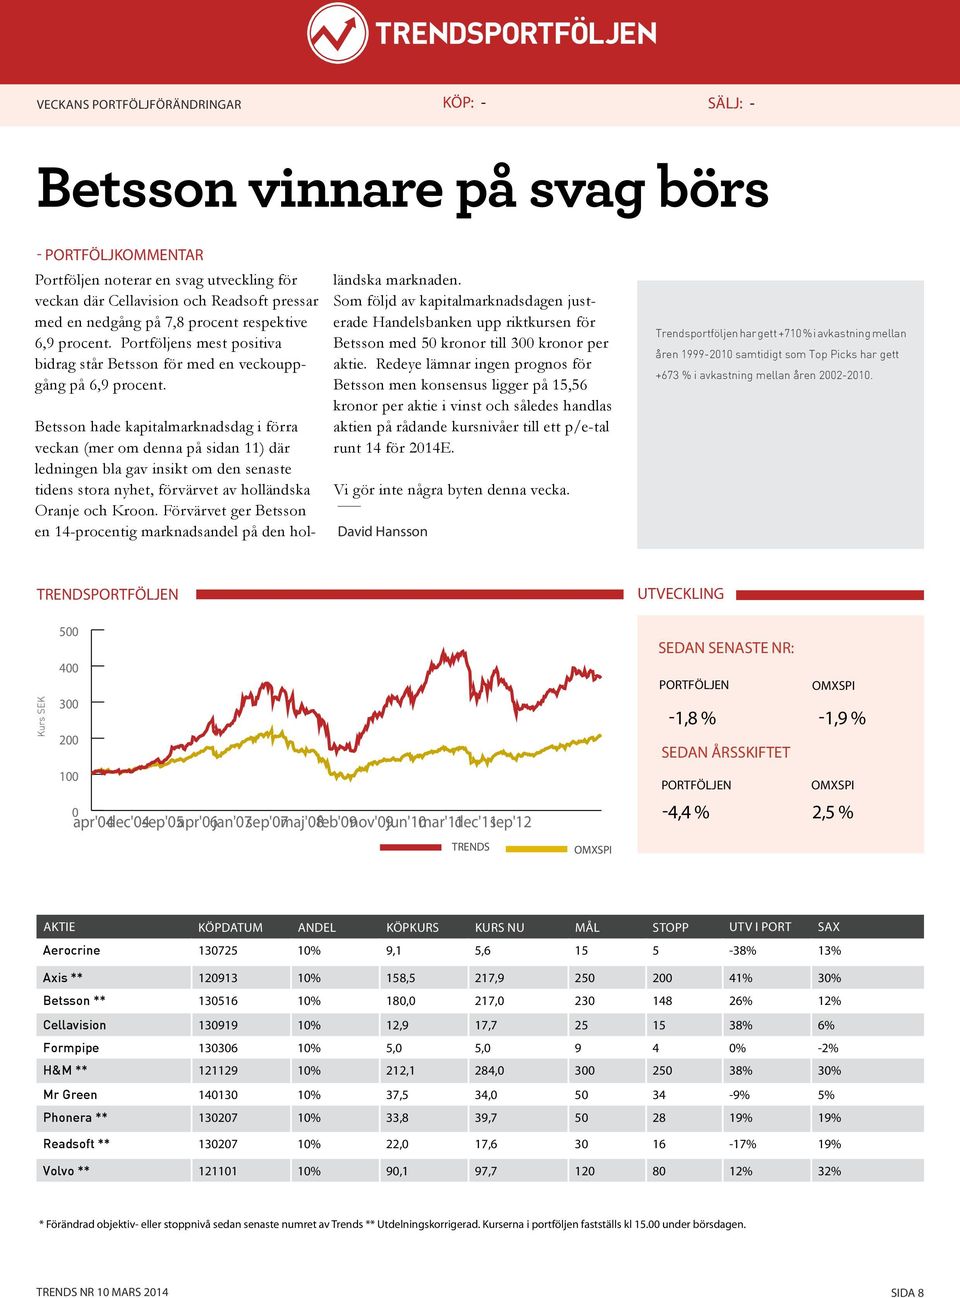 Betsson hade kapitalmarknadsdag i förra veckan (mer om denna på sidan 11) där ledningen bla gav insikt om den senaste tidens stora nyhet, förvärvet av holländska Oranje och Kroon.